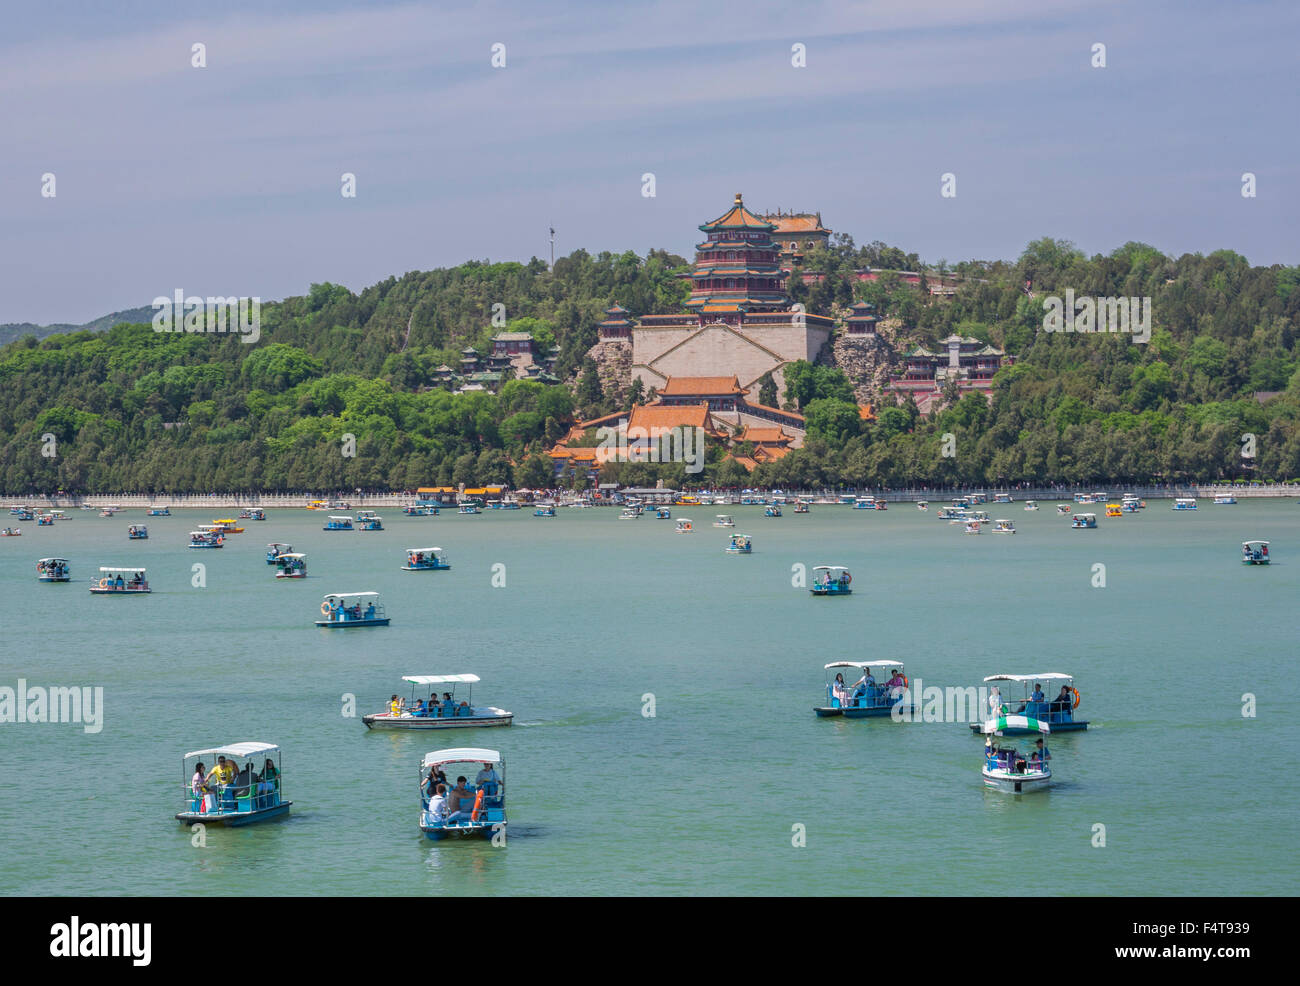 Cina, Pechino, Pechino, città il palazzo d'estate, la longevità Hill, fragranza buddista Pavilion, il Lago Kunming Foto Stock